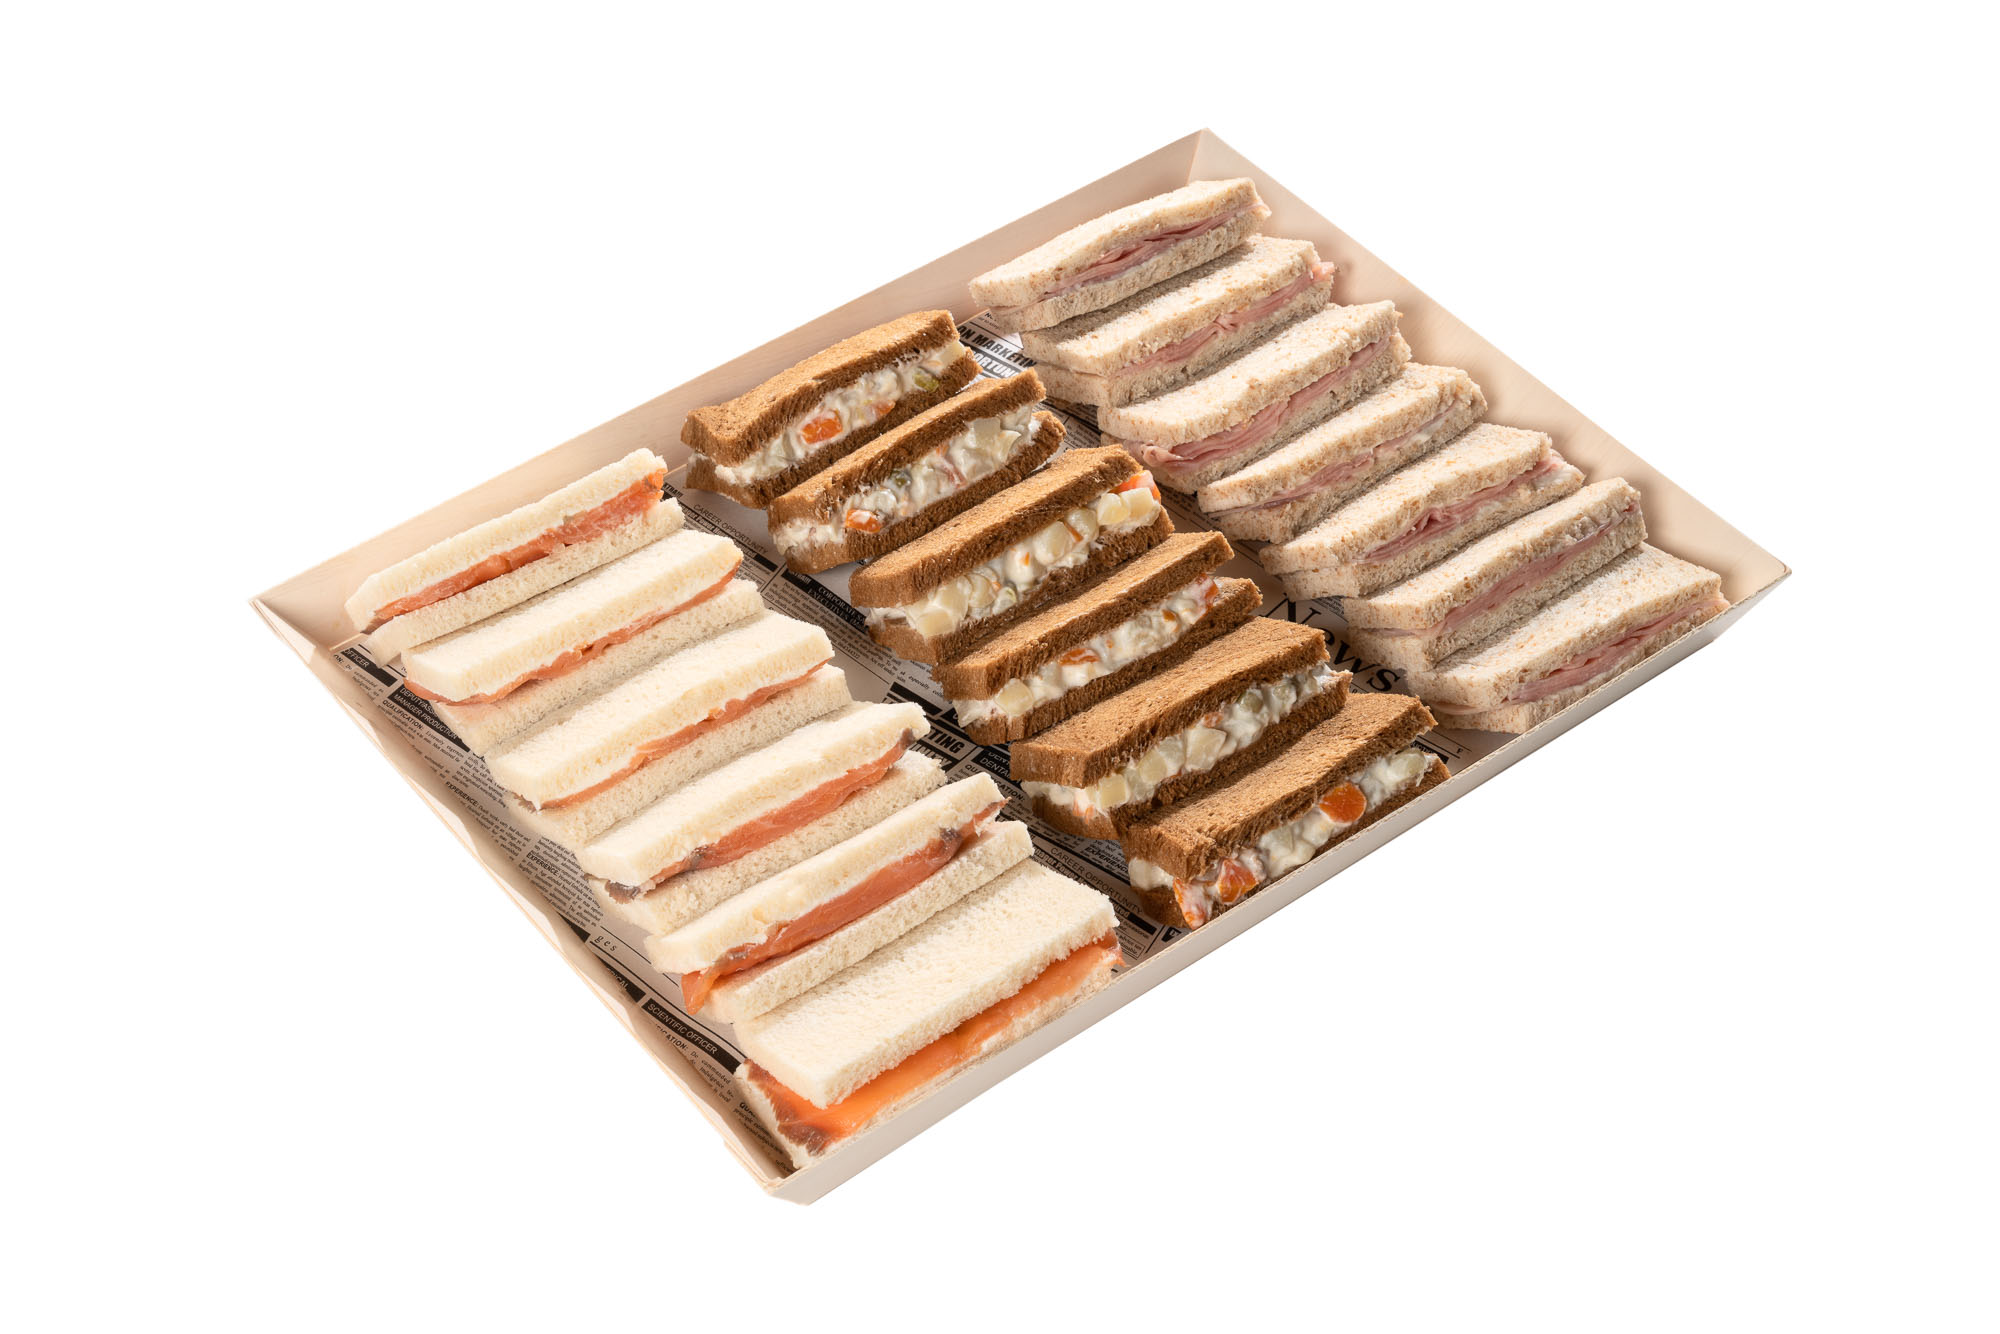 Bandeja de sandwichs en pan tramezzino con diferentes sabores